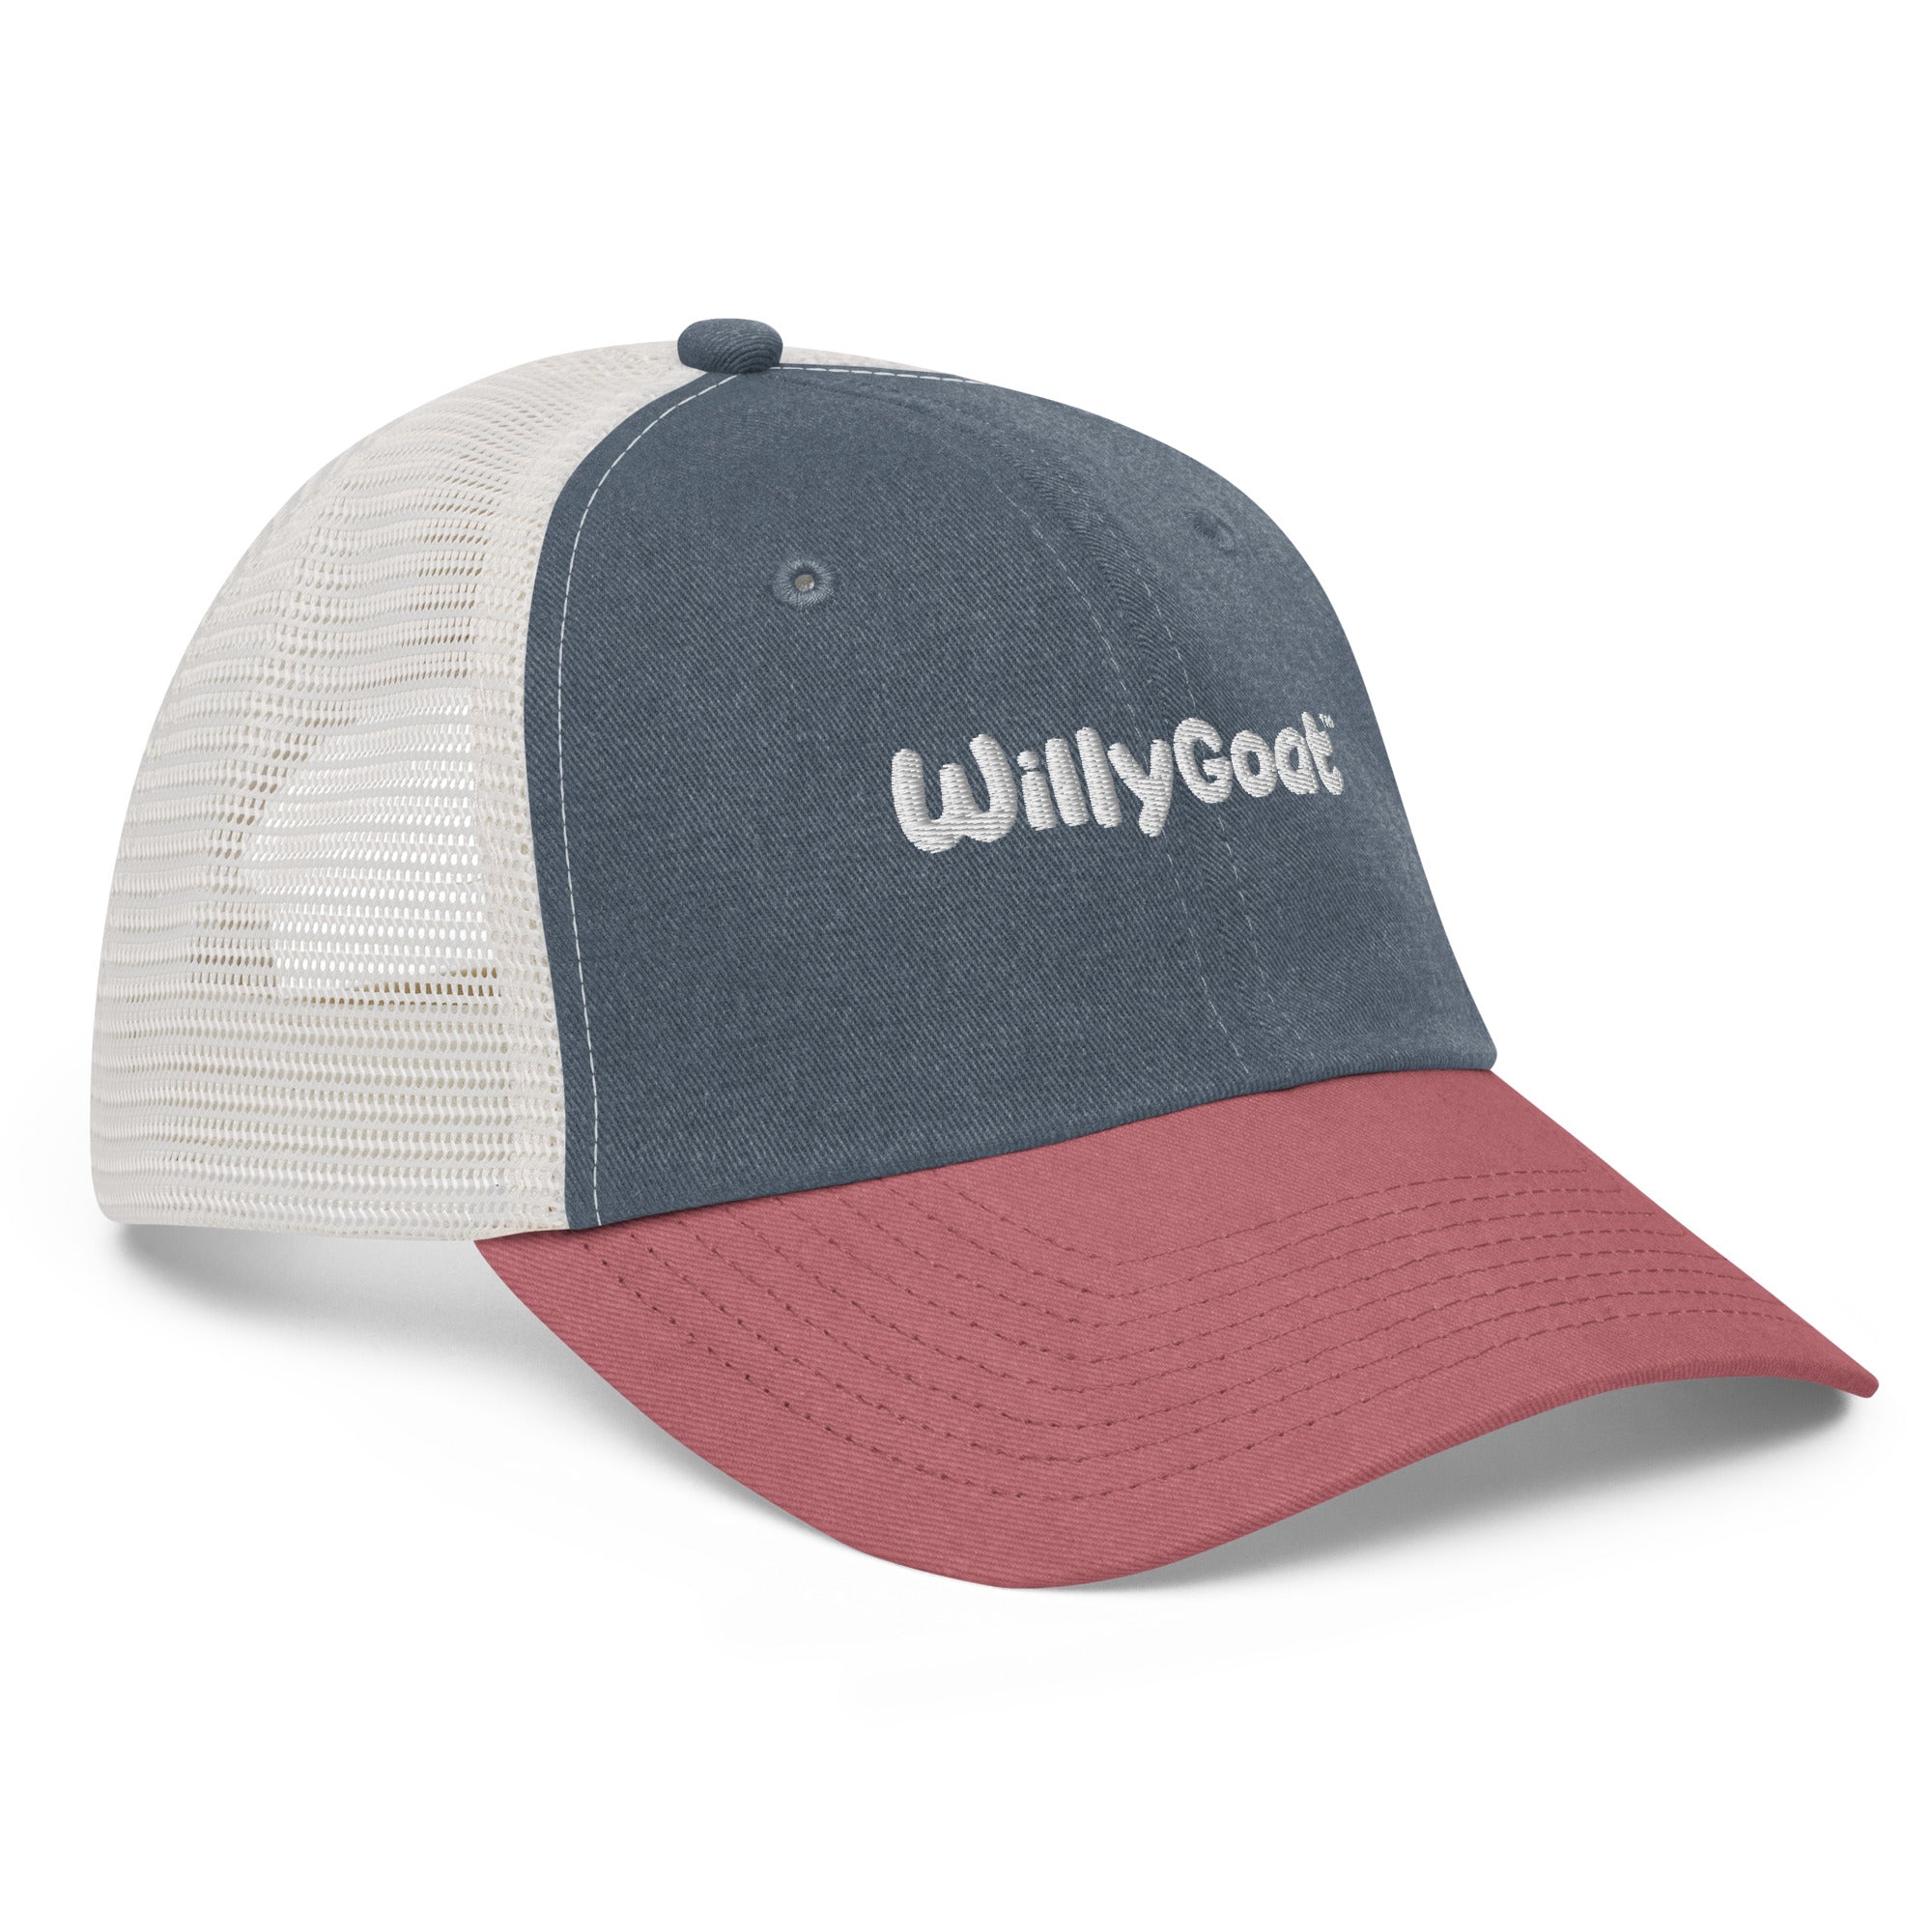 WillyGoat Trucker Hat